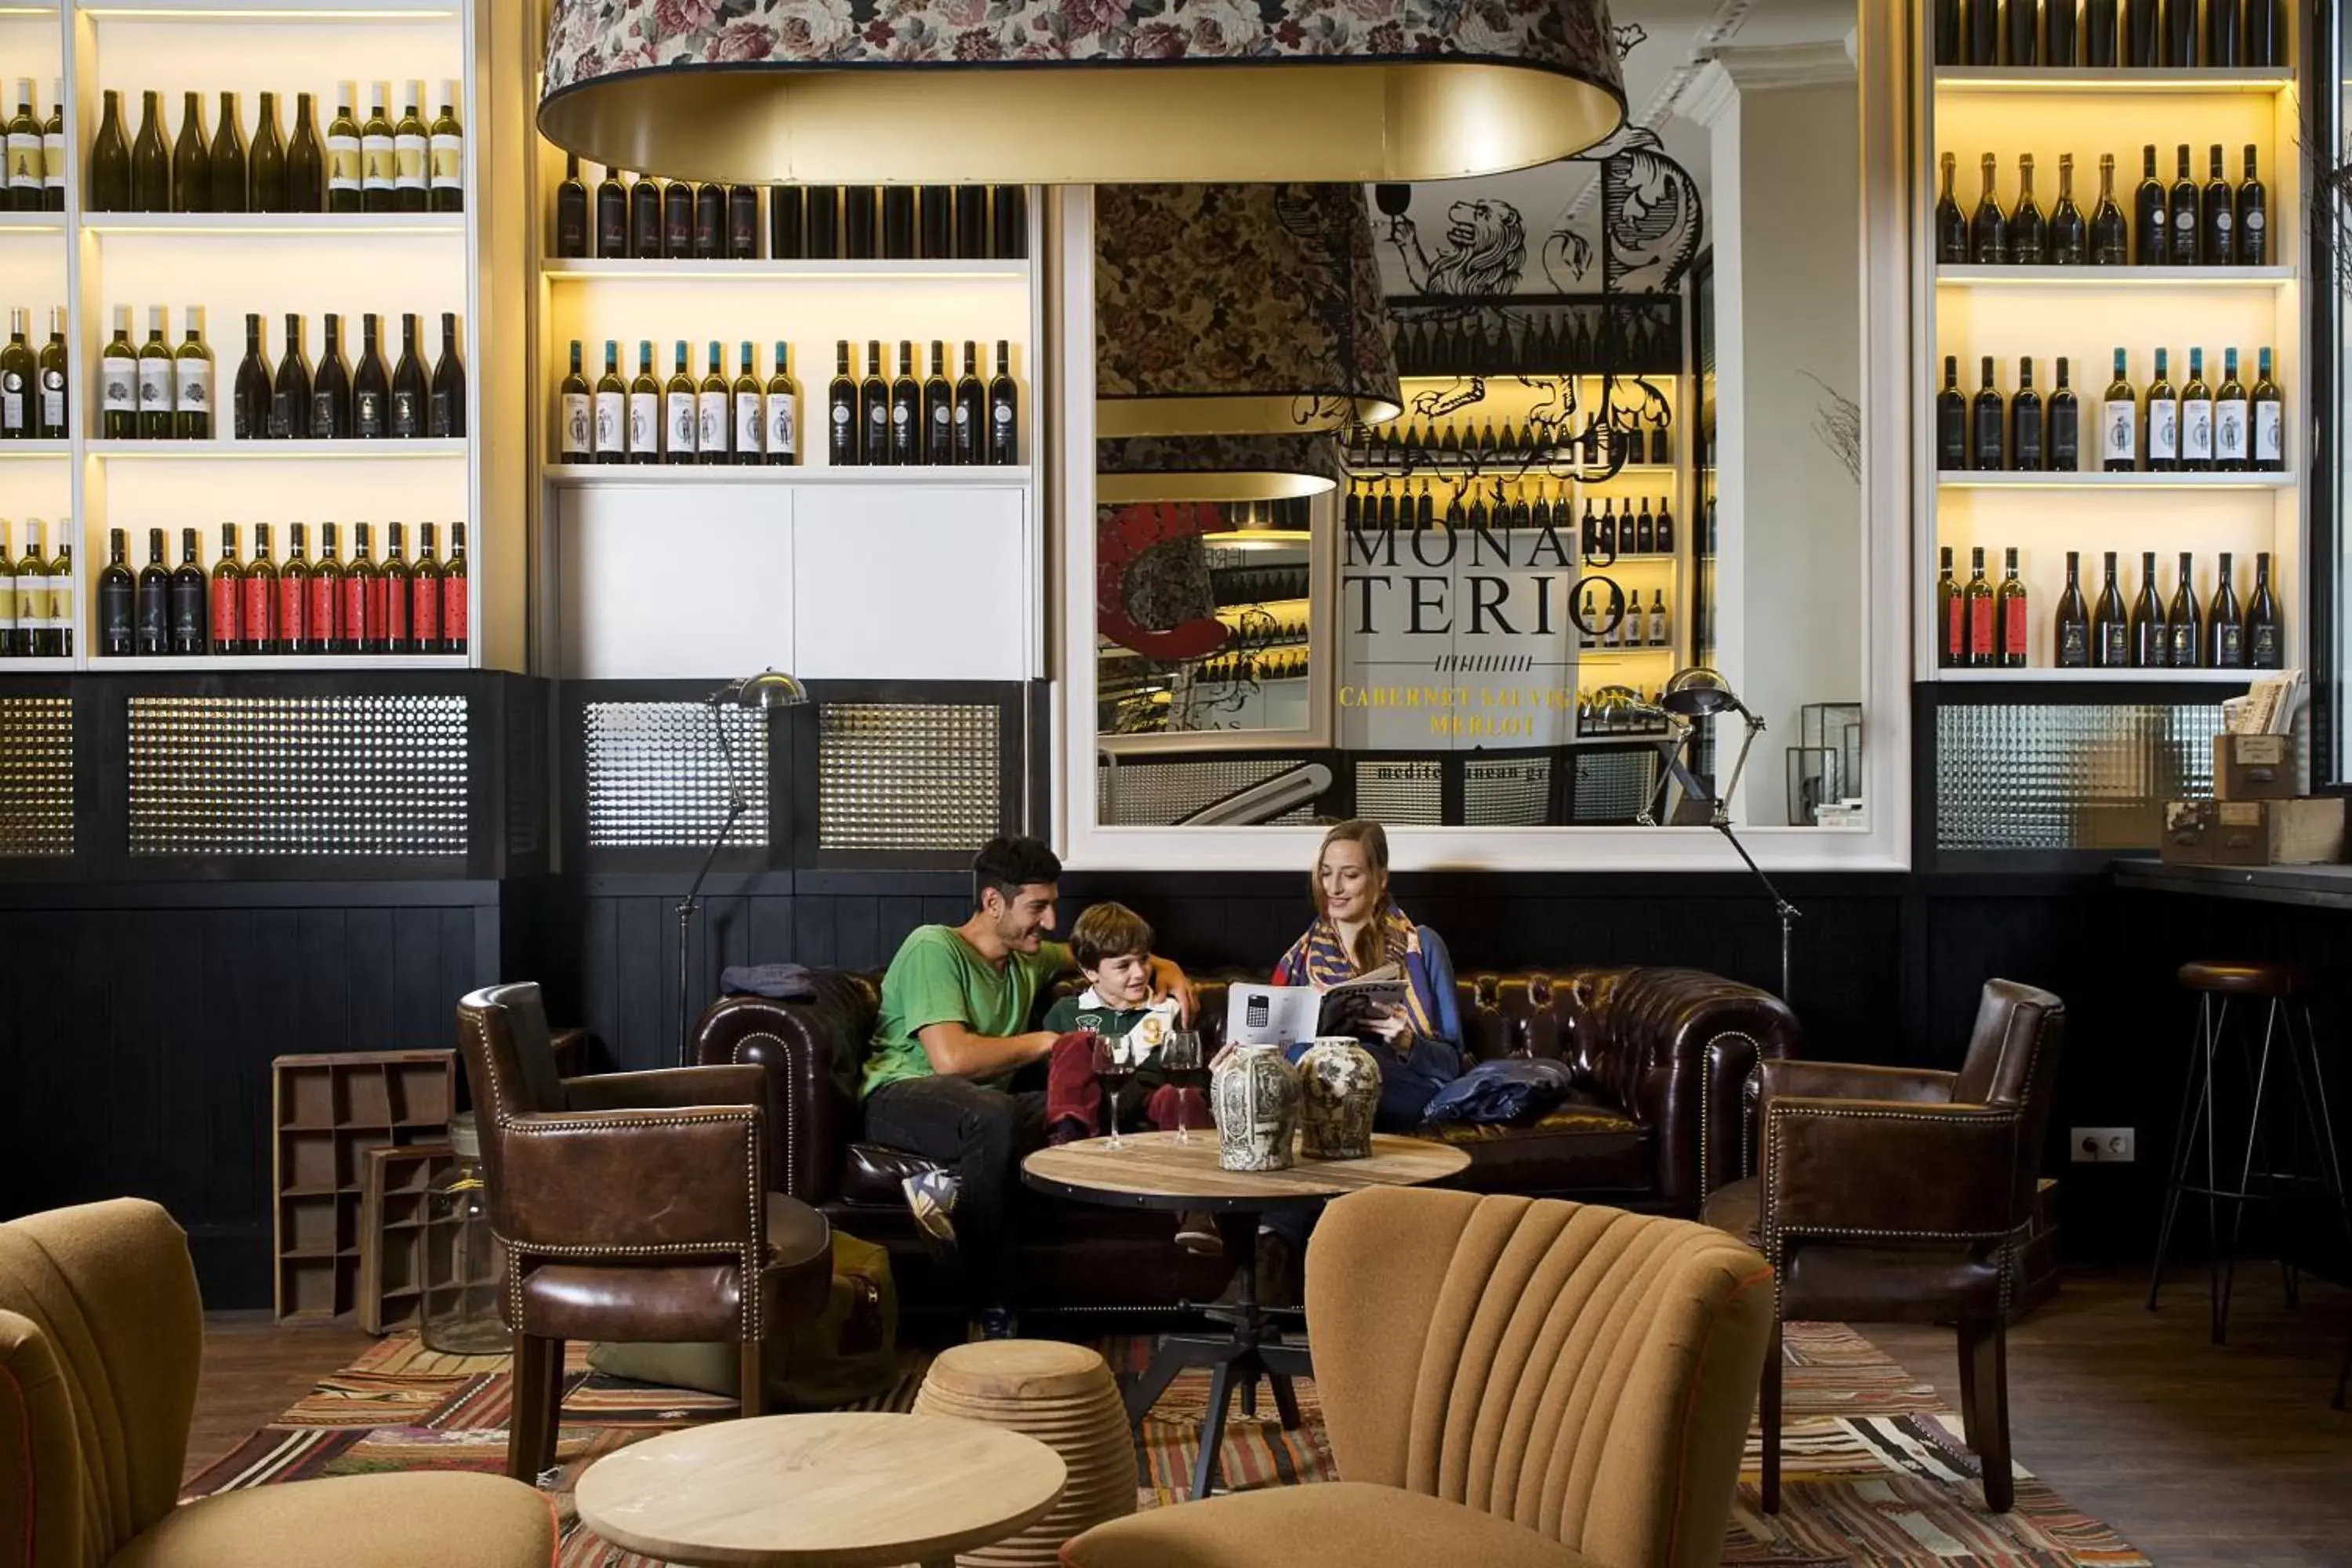 Lounge or bar, Restaurant/Places to Eat in Praktik Vinoteca